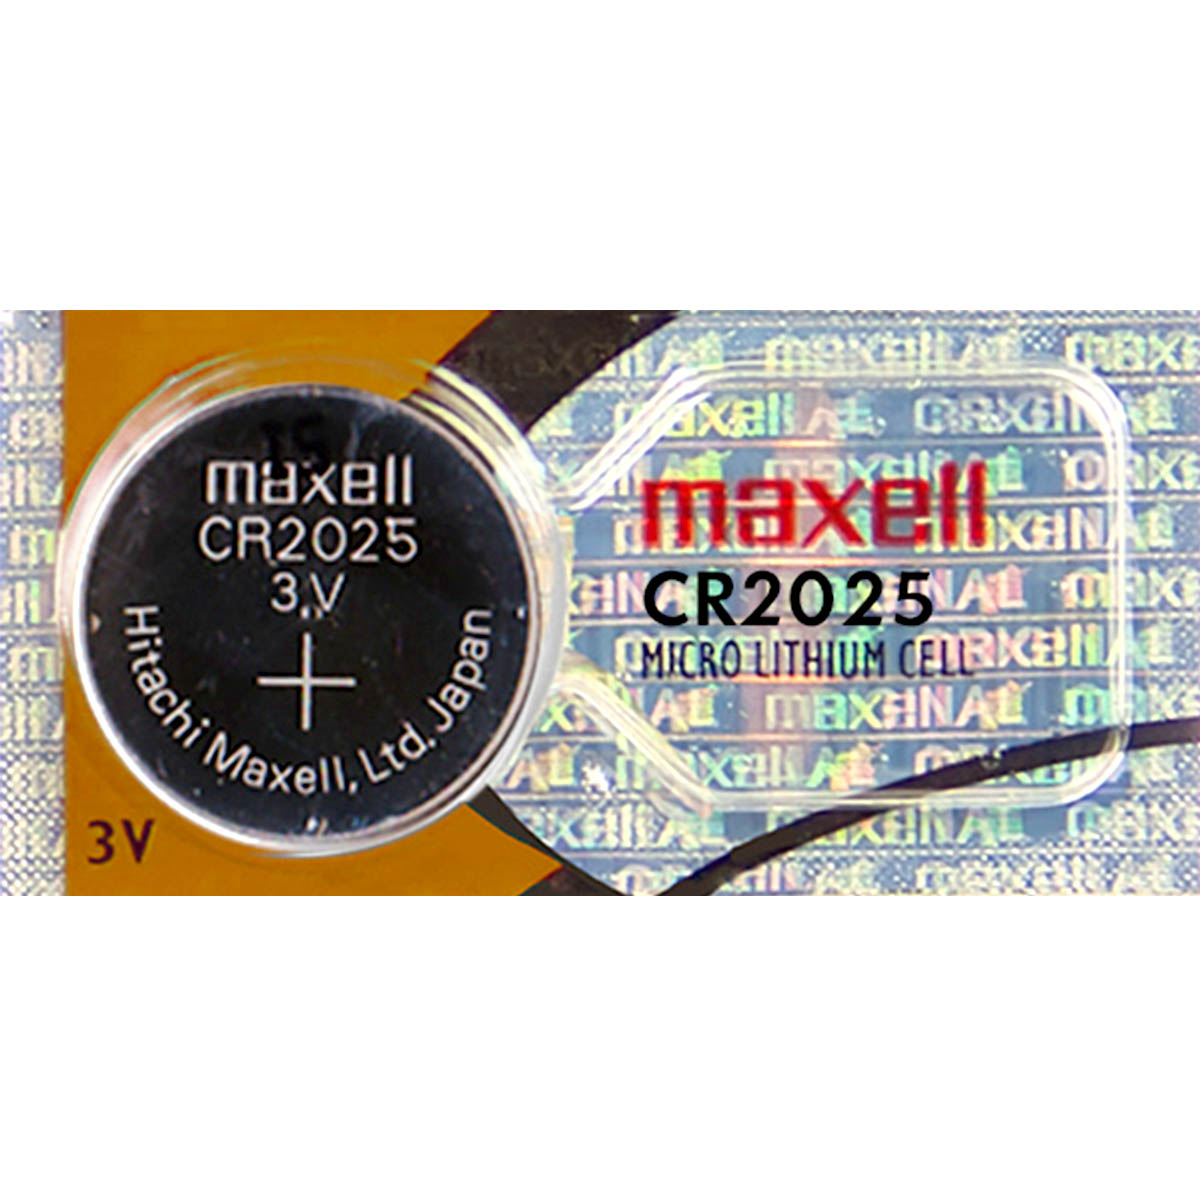 CR2025MAXELLx5 de Maxell - Pila Litio CR2025 MAXELL 3V 20mA